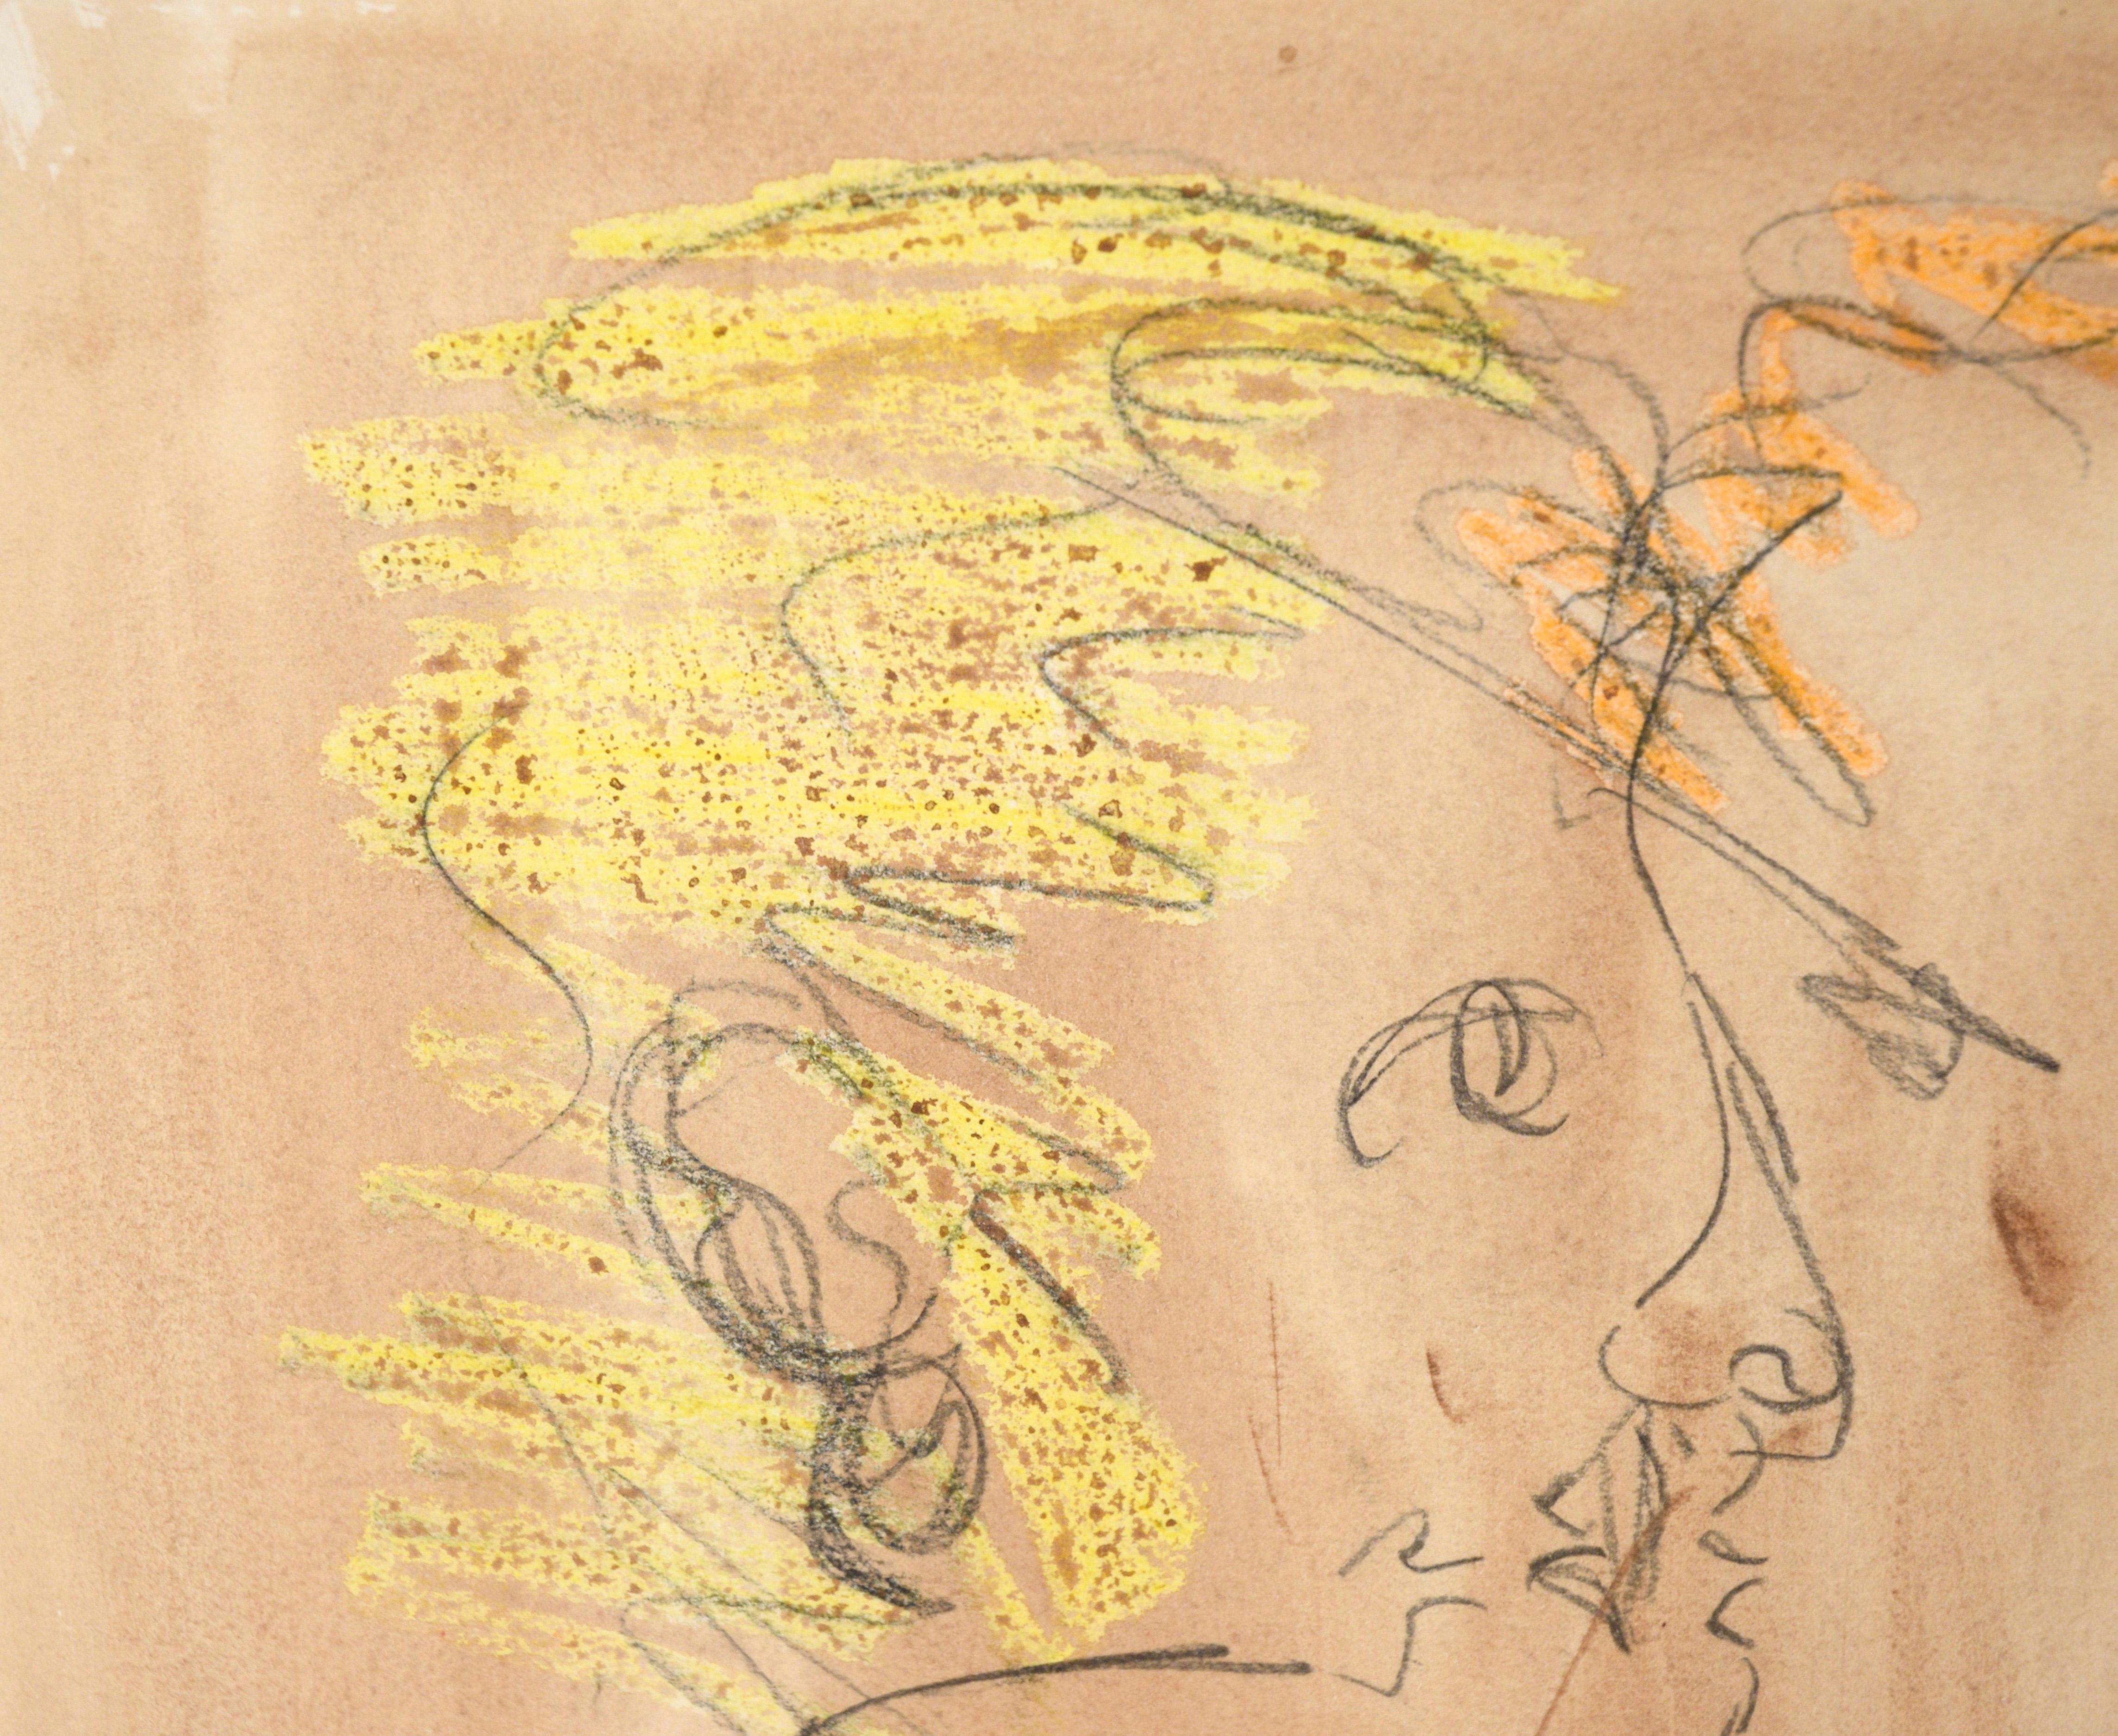 Aquarelle abstraite « The Eyes Have It » (Les yeux l'ont ») et crayon sur papier - Art de Ricardo de Silva